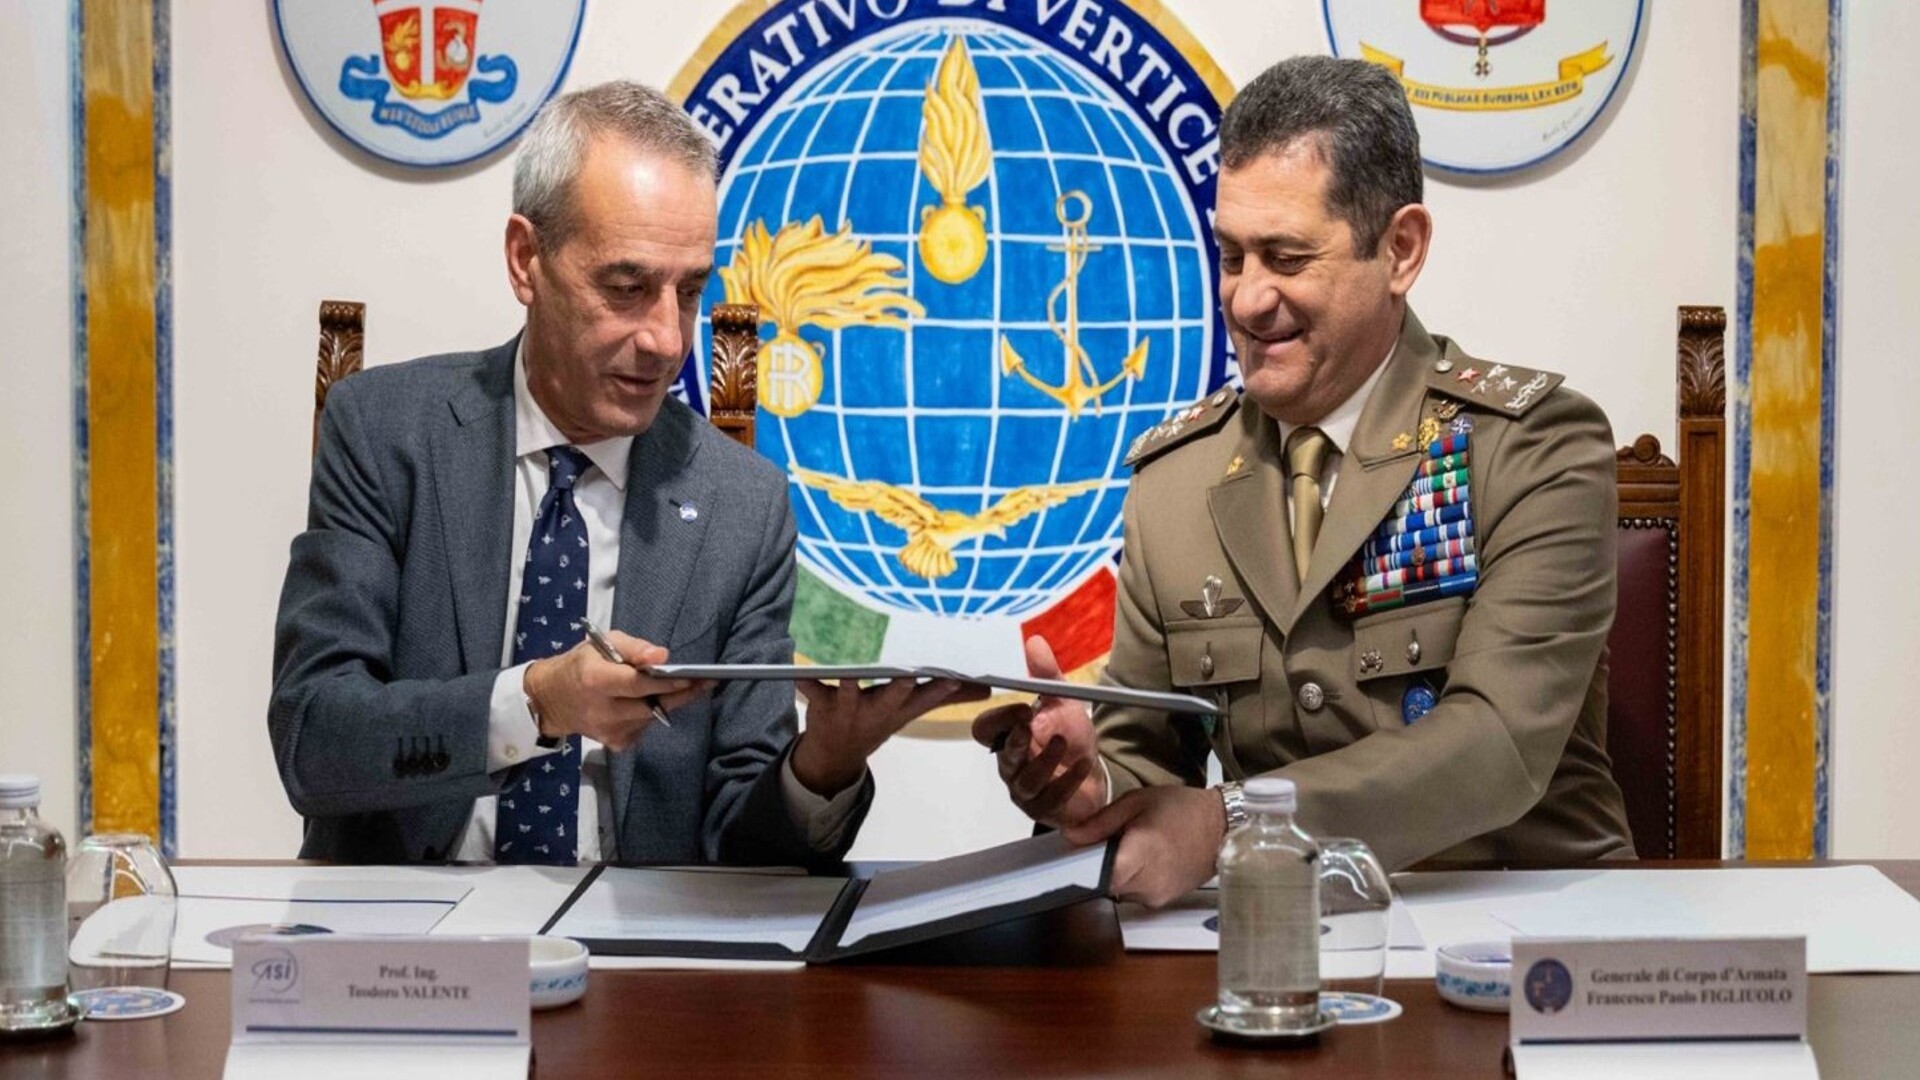 Firmato l’Accordo Quadro tra il Comando Operativo Vertice Interforze (Covi) e l’ASI per la collaborazione nel settore delle operazioni spaziali